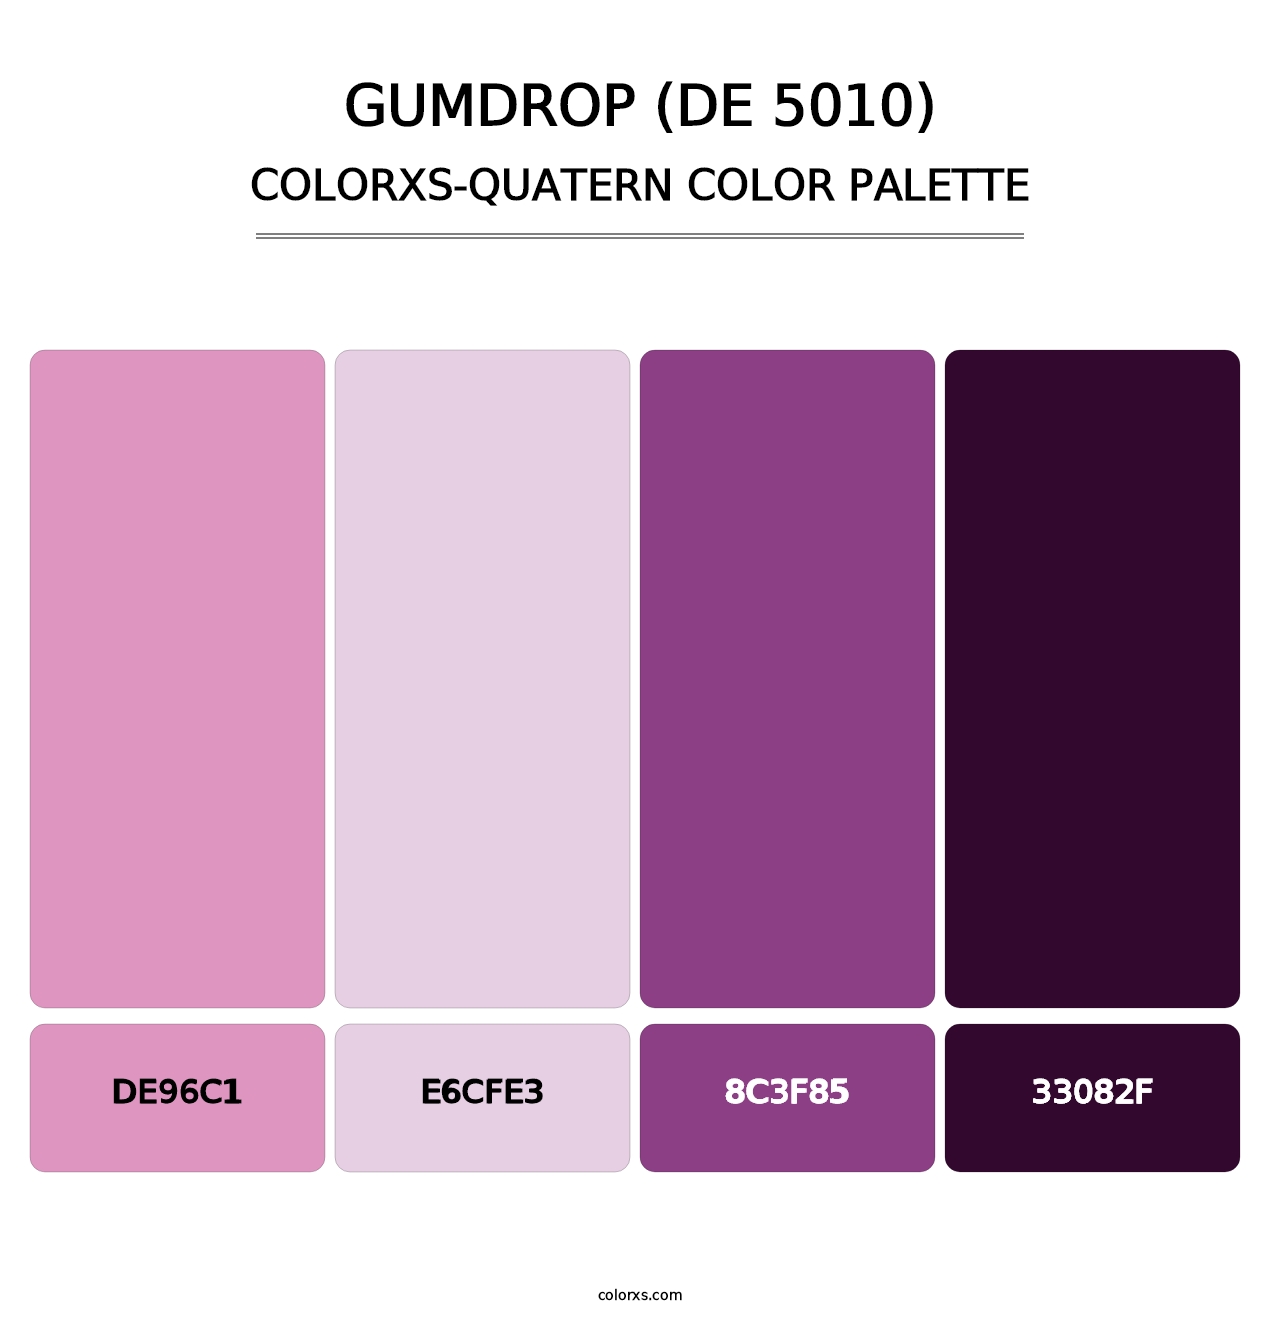 Gumdrop (DE 5010) - Colorxs Quatern Palette